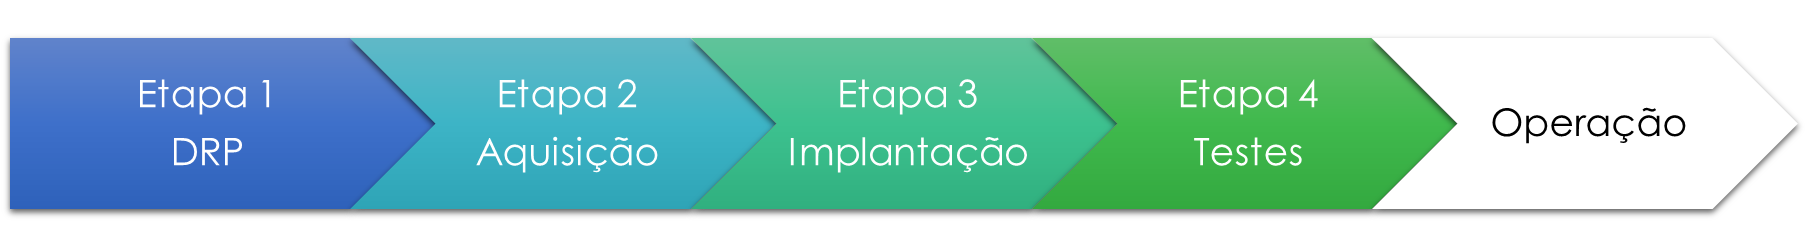 Projeto de DRP: Etapa 1 - DRP, Etapa 2 - Aquisição, Etapa 3 - Implantação, Etapa 4 - Testes